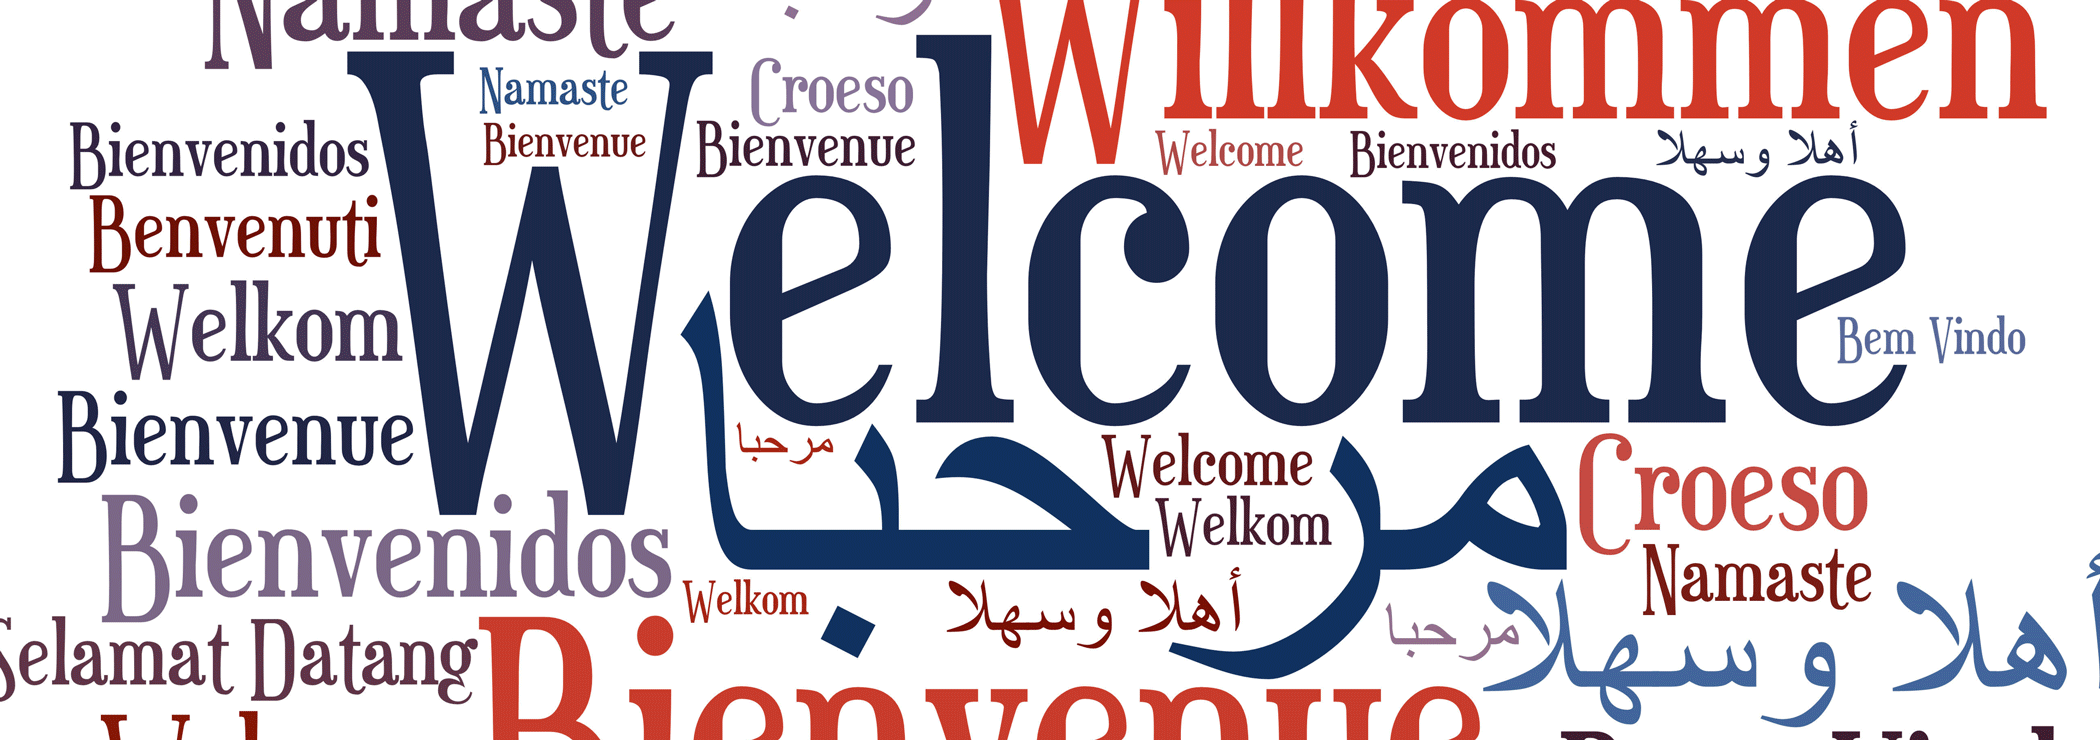 Welcome, Willkommen, Binevenue, Bienvenido